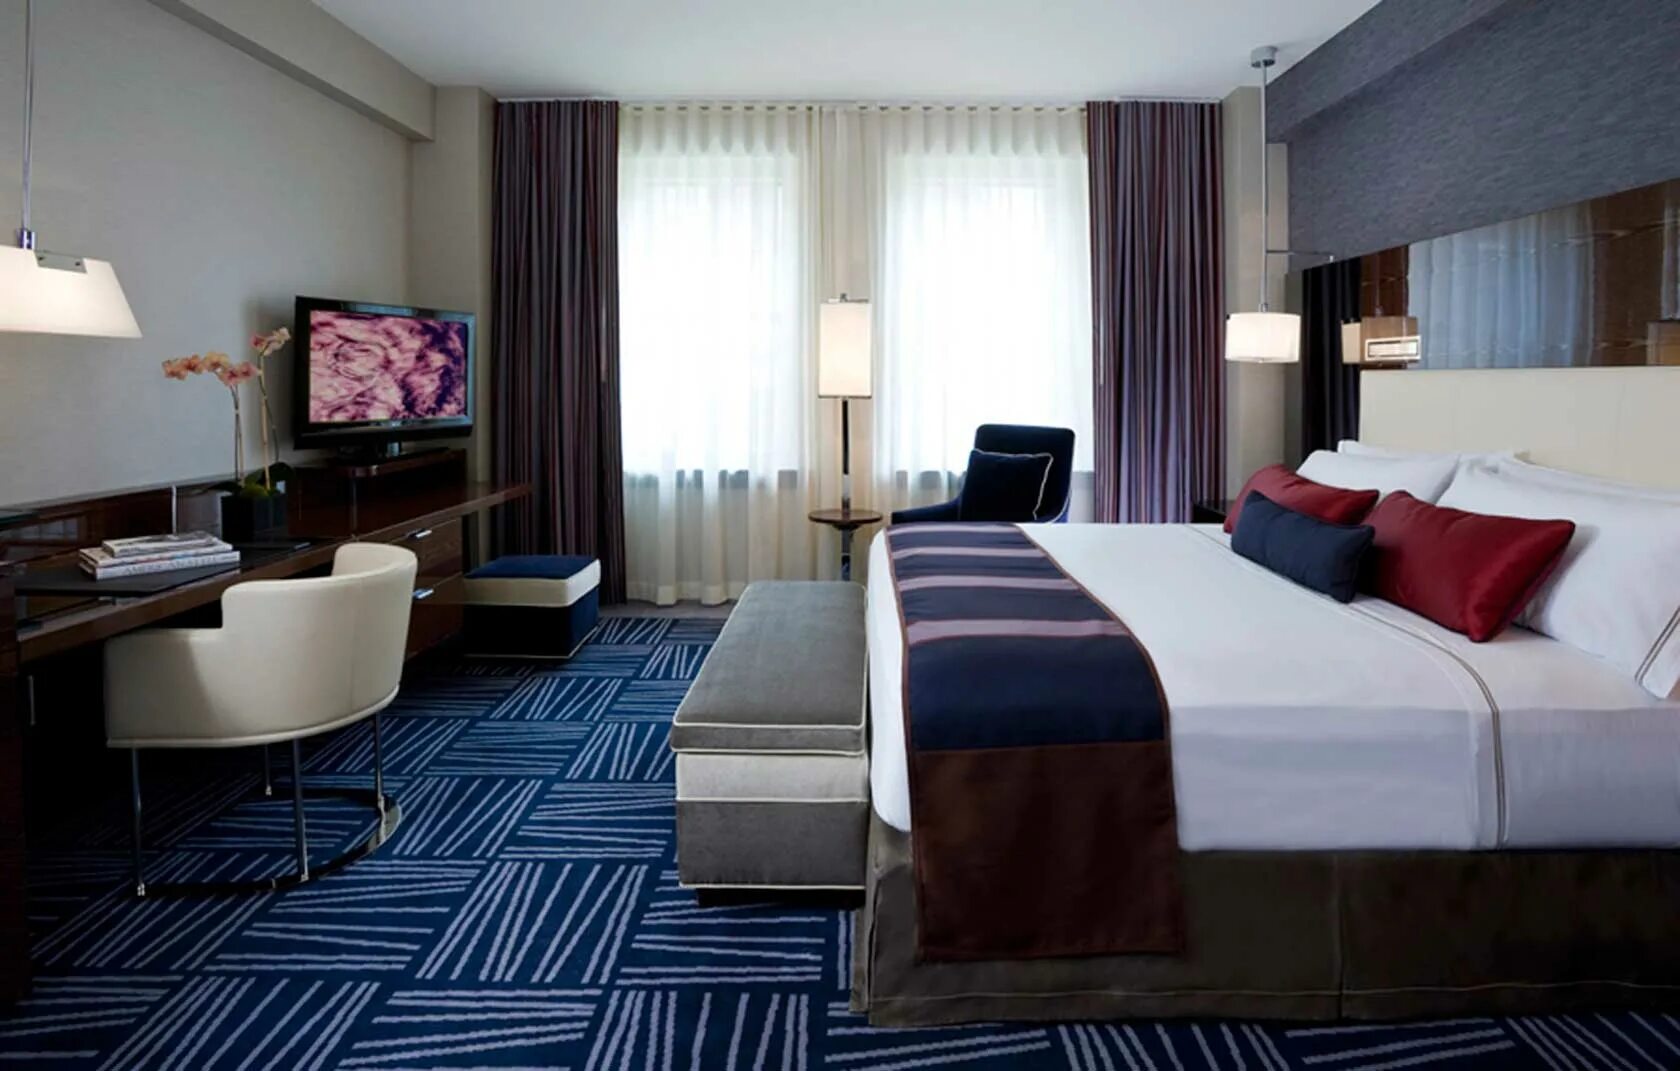 Hotel bedroom. Интерьер номера в гостинице. Отель в современном стиле. Интерьеры гостиниц в современном стиле. Спальня в гостиничном стиле.